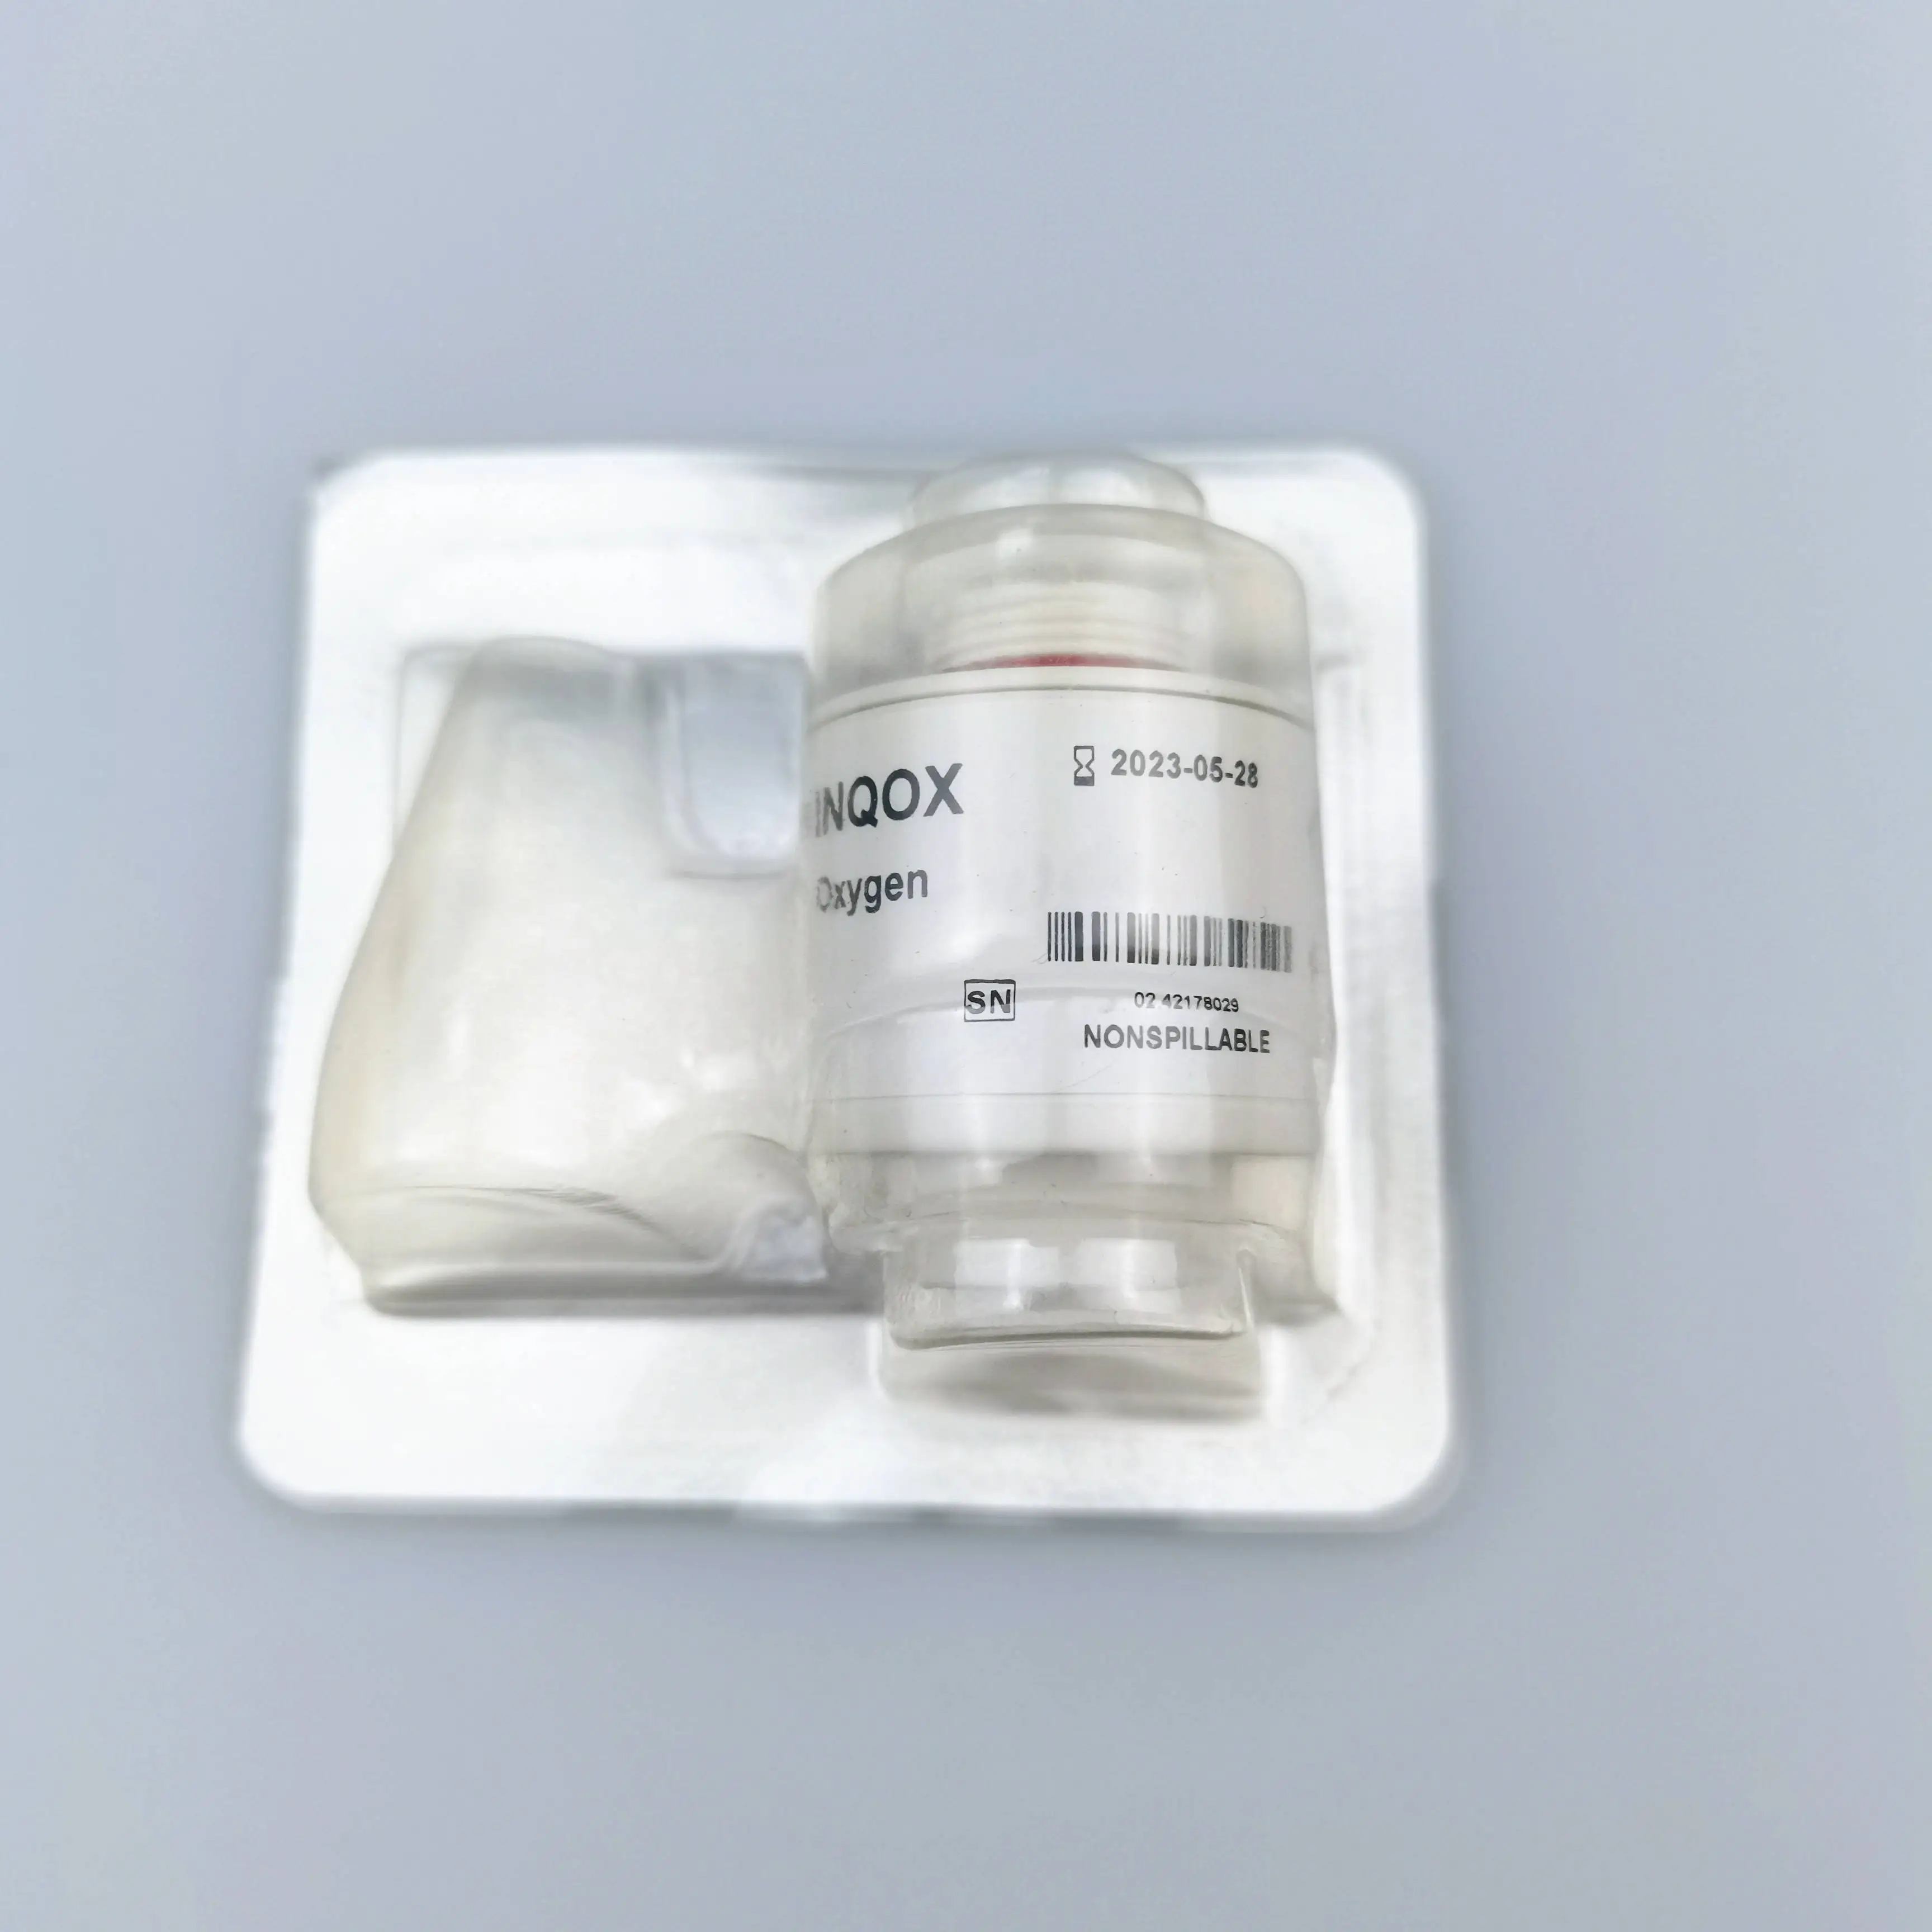 Comen NV8/9 O2 Cell Original INQOX Oxygen Sensor